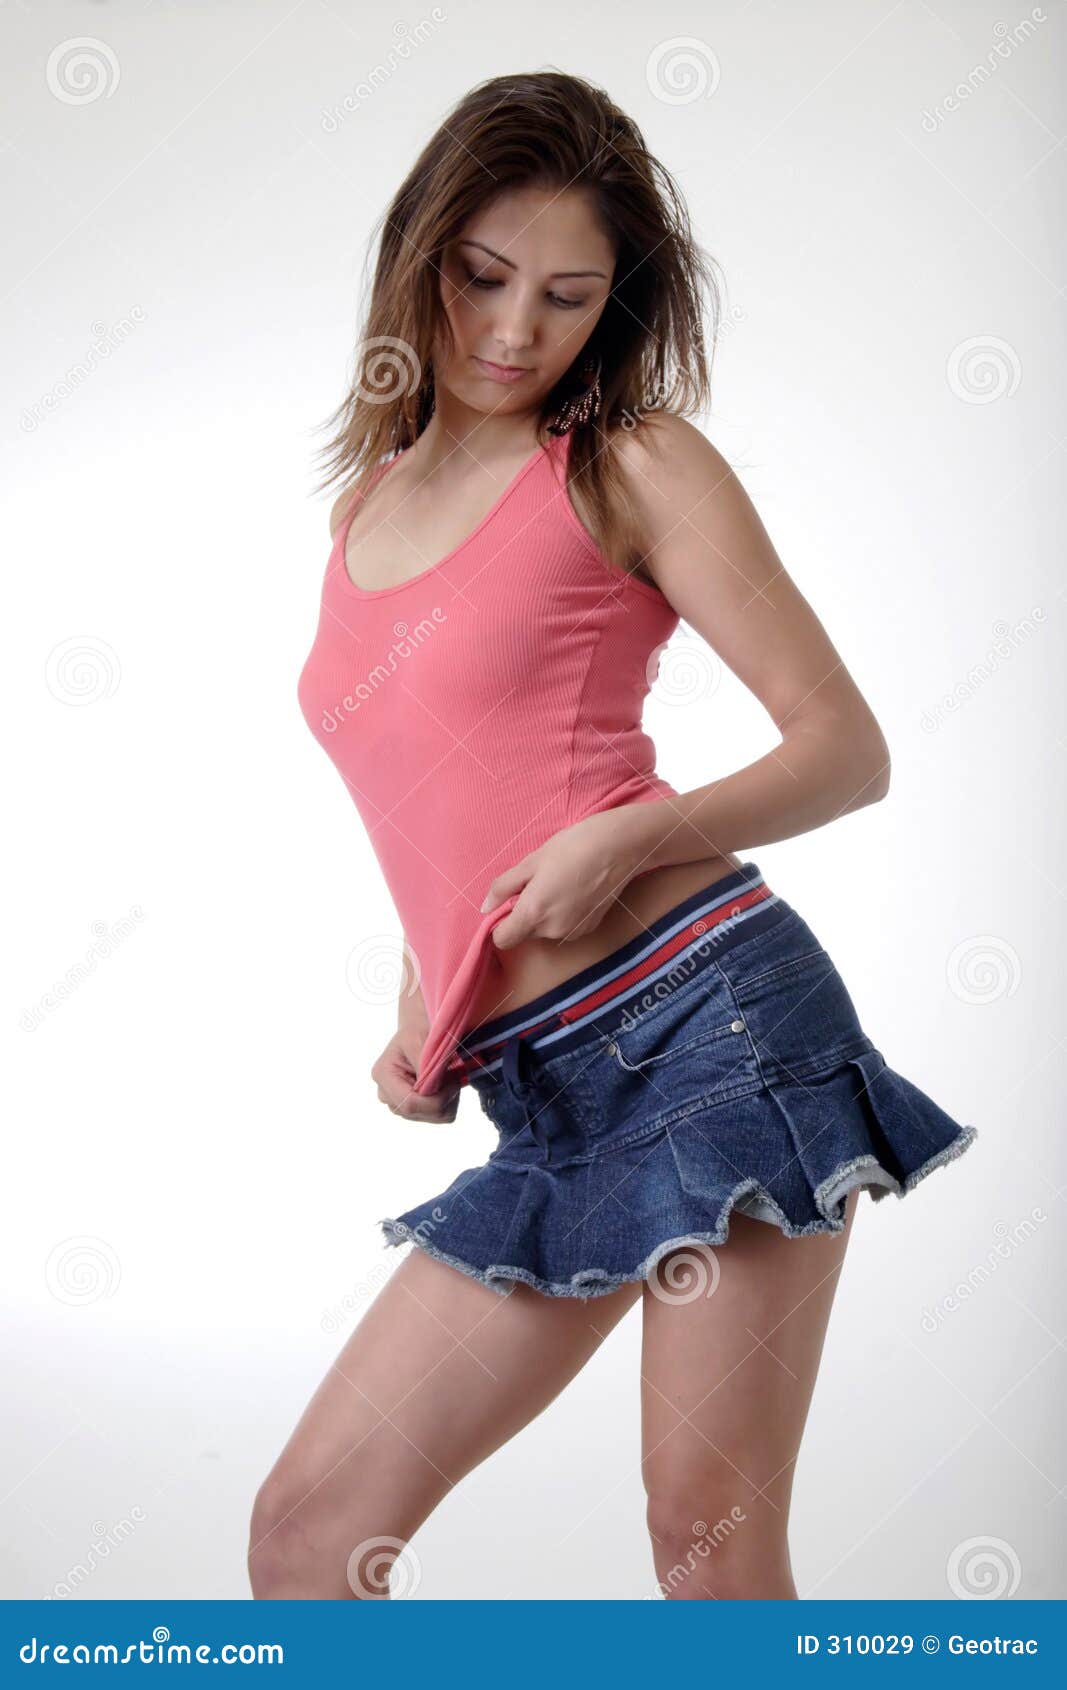 Hot sexy teen skirt